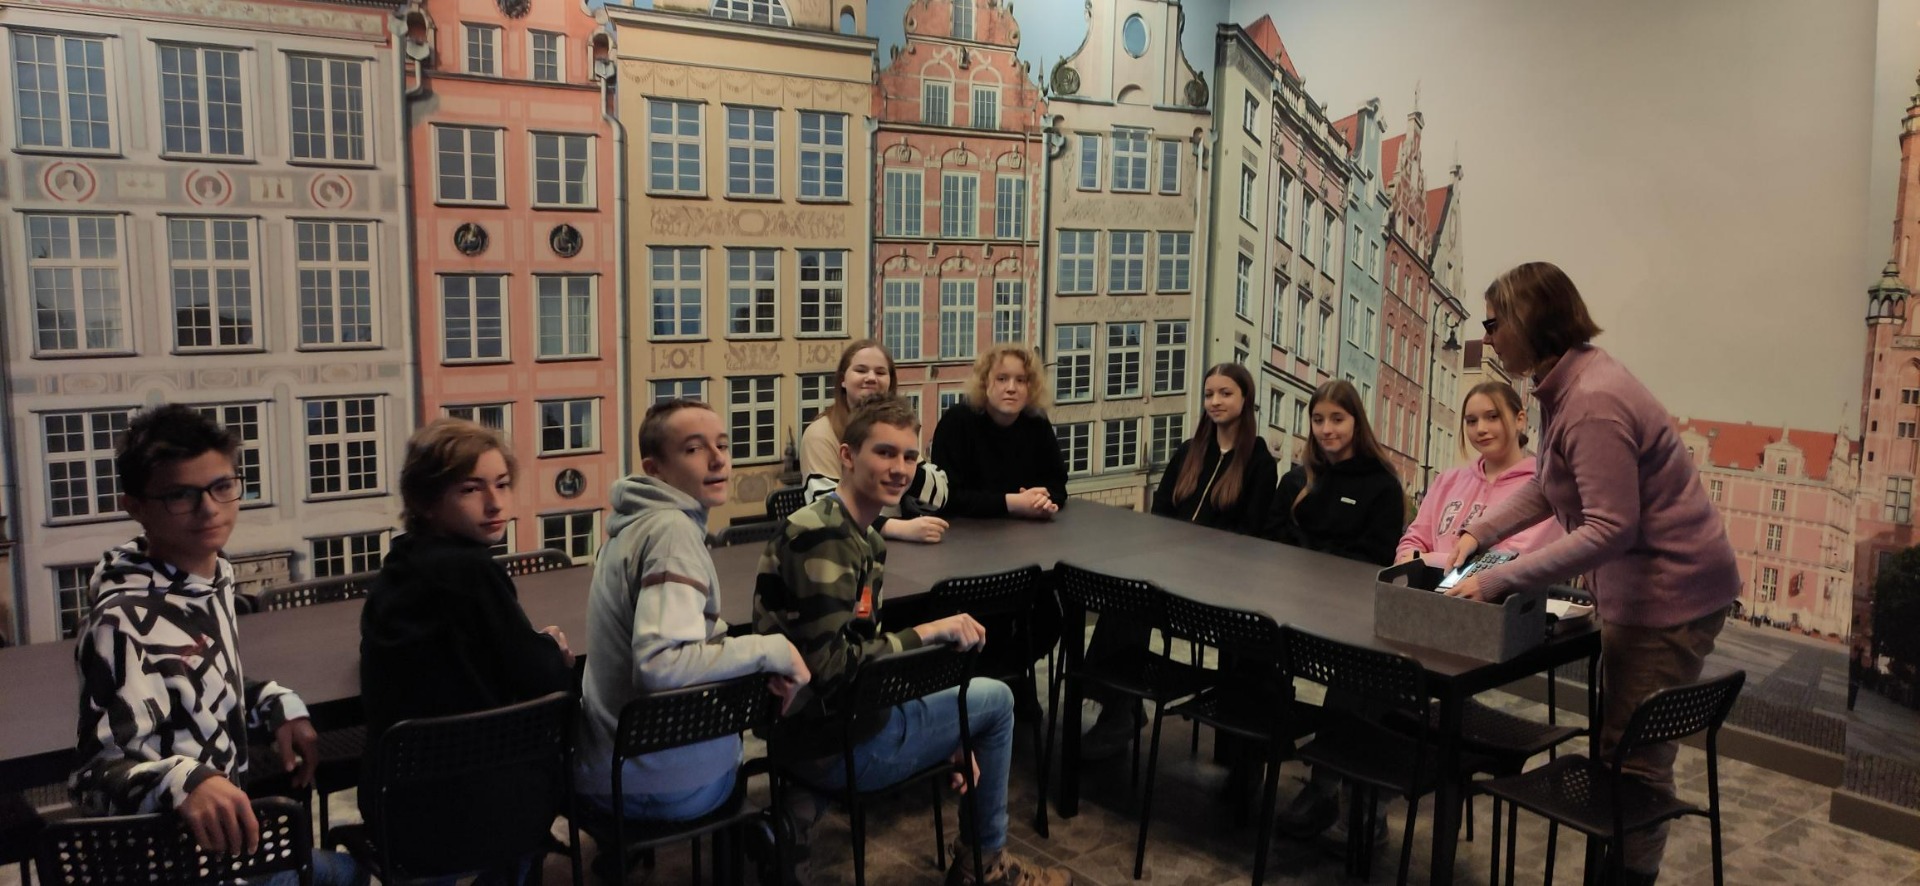 Uczniowie słuchają pani przewodnik w muzeum Niewidzialny Gdańsk. W tle kamieniczki Głównego miasta Gdańsk.